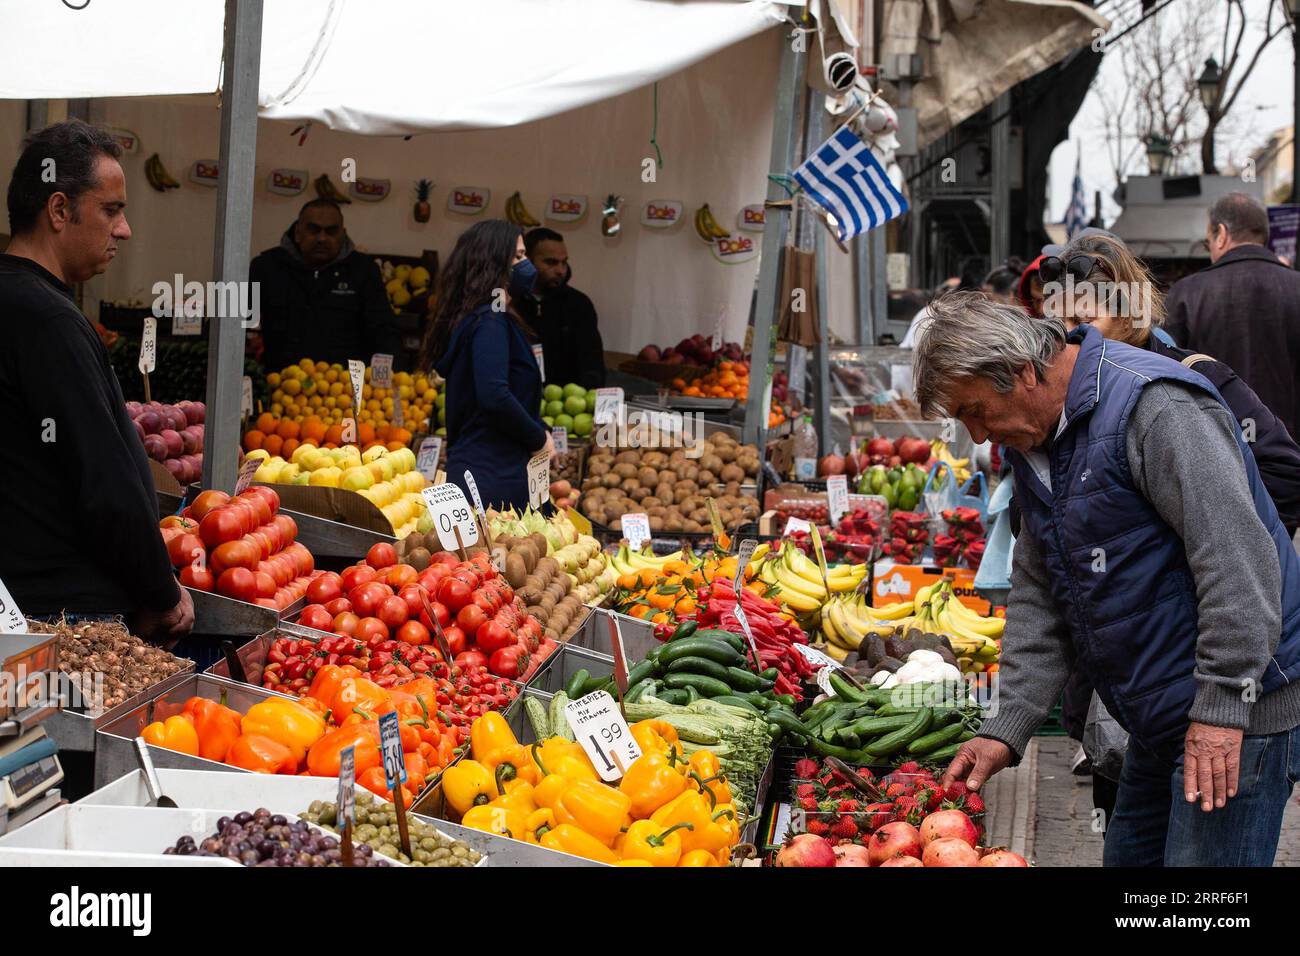 220401 -- ATHEN, 1. April 2022 -- Ein Mann kauft Gemüse auf einem Markt in Athen, Griechenland, 31. März 2022. Jüngste Zahlen der Hellenischen Statistischen Behörde ELSTAT zeigten, dass die jährliche Inflationsrate Griechenlands im Februar auf 7,2 Prozent gestiegen ist und damit einen Höchststand von 26 Jahren erreicht hat. Der griechische Verband der Fachkräfte, Handwerker und Händler GSEVEE fordert eine unmittelbare Senkung der Steuern auf Brennstoffe und eine Obergrenze für Strom- und Erdgaspreise sowie eine genaue Überwachung der Nahrungsmittelvorräte des Landes, wie Sonnenblumenöl und Mehl, um Profitgier zu verhindern. GRIECHENLAND-ATHEN- Stockfoto